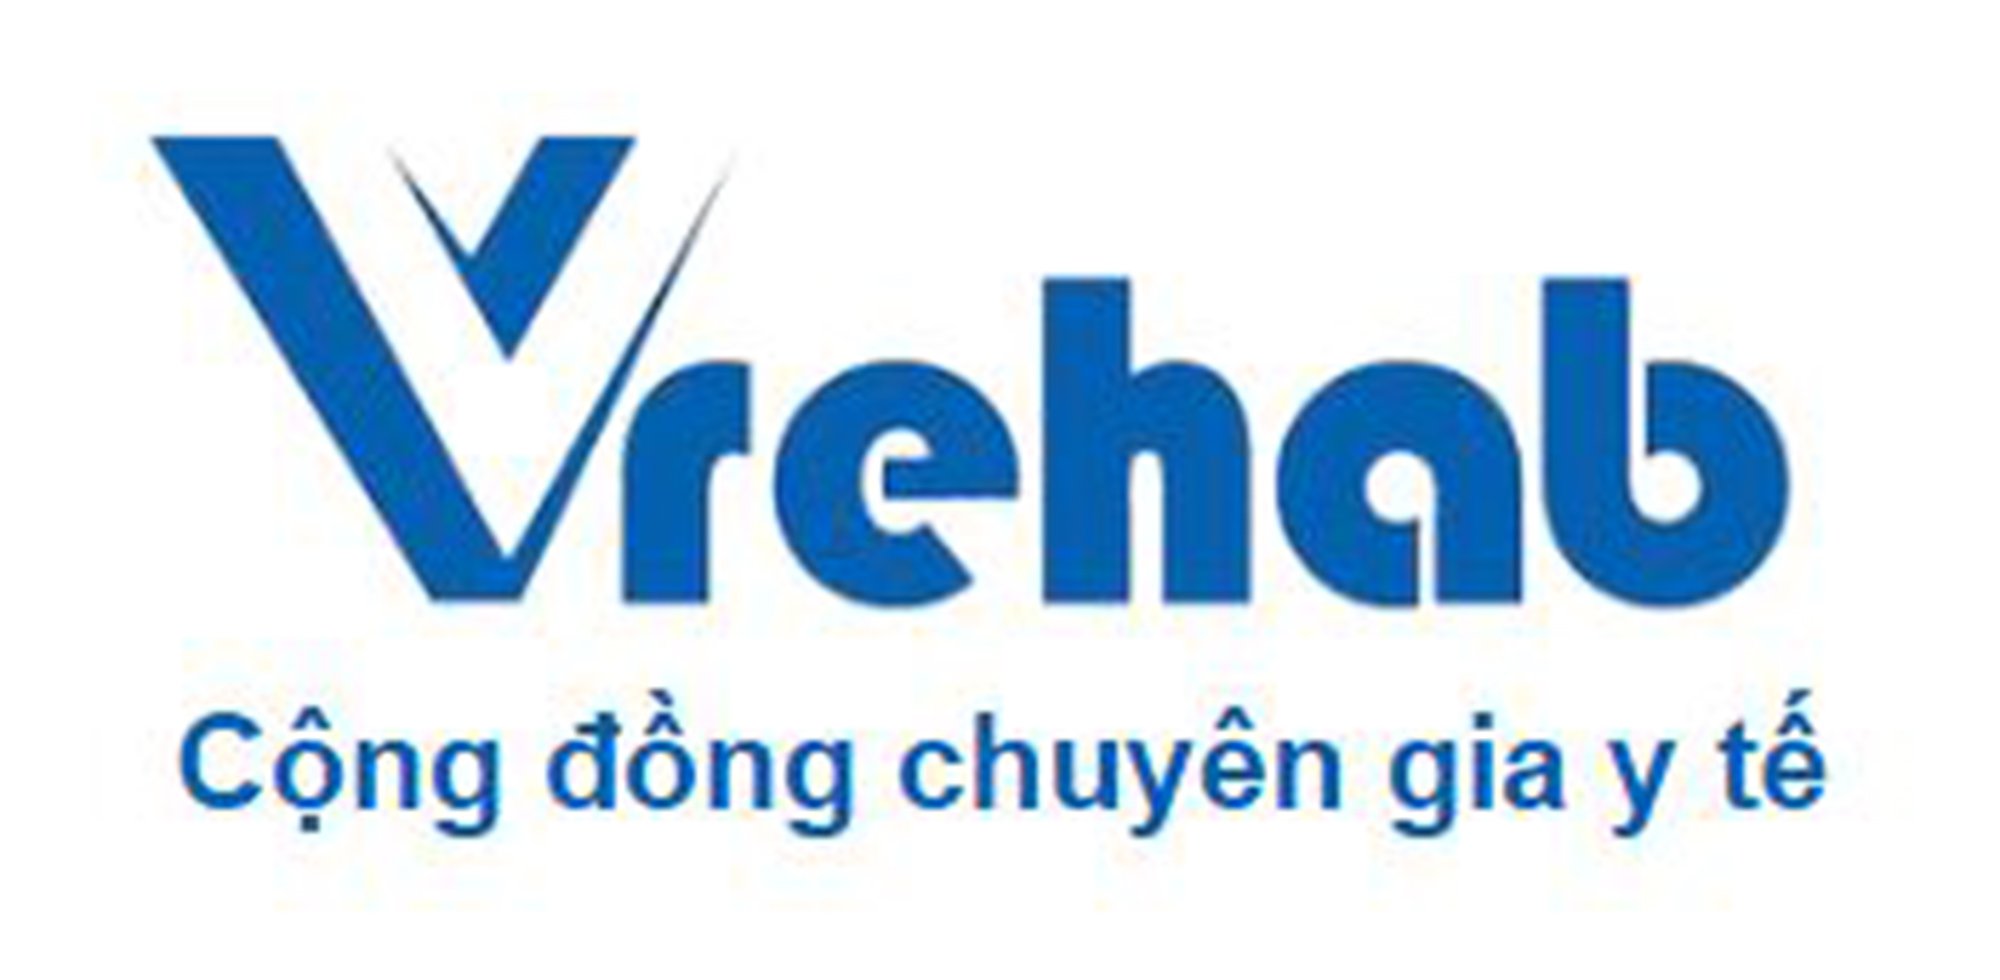 Giới thiệu, hướng dẫn cài đặt và đăng kí phần mềm Vrehab